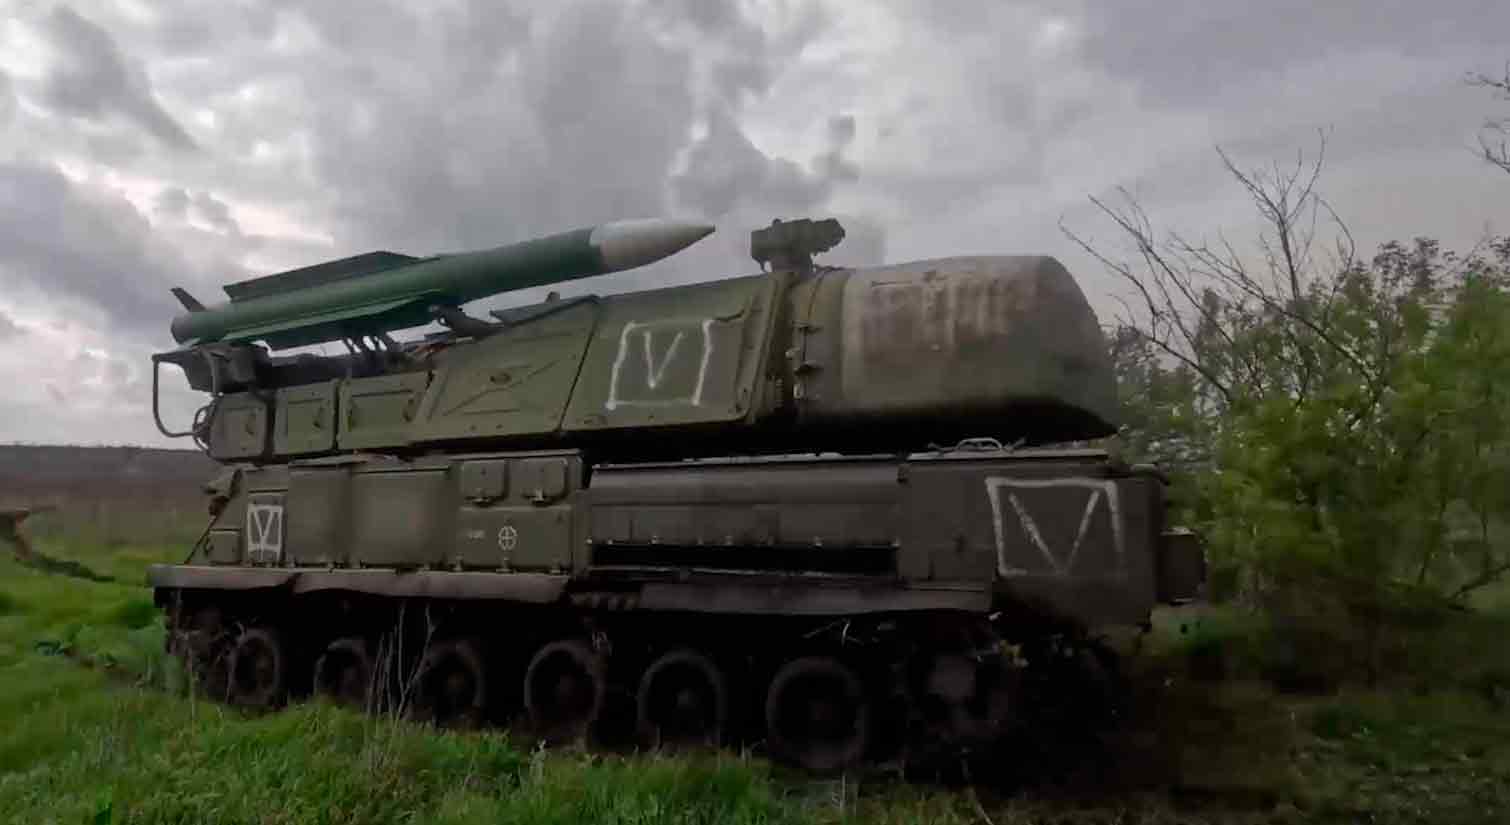 Videó mutatja a "Buk" légvédelmi rakétarendszert, amit Oroszország használ